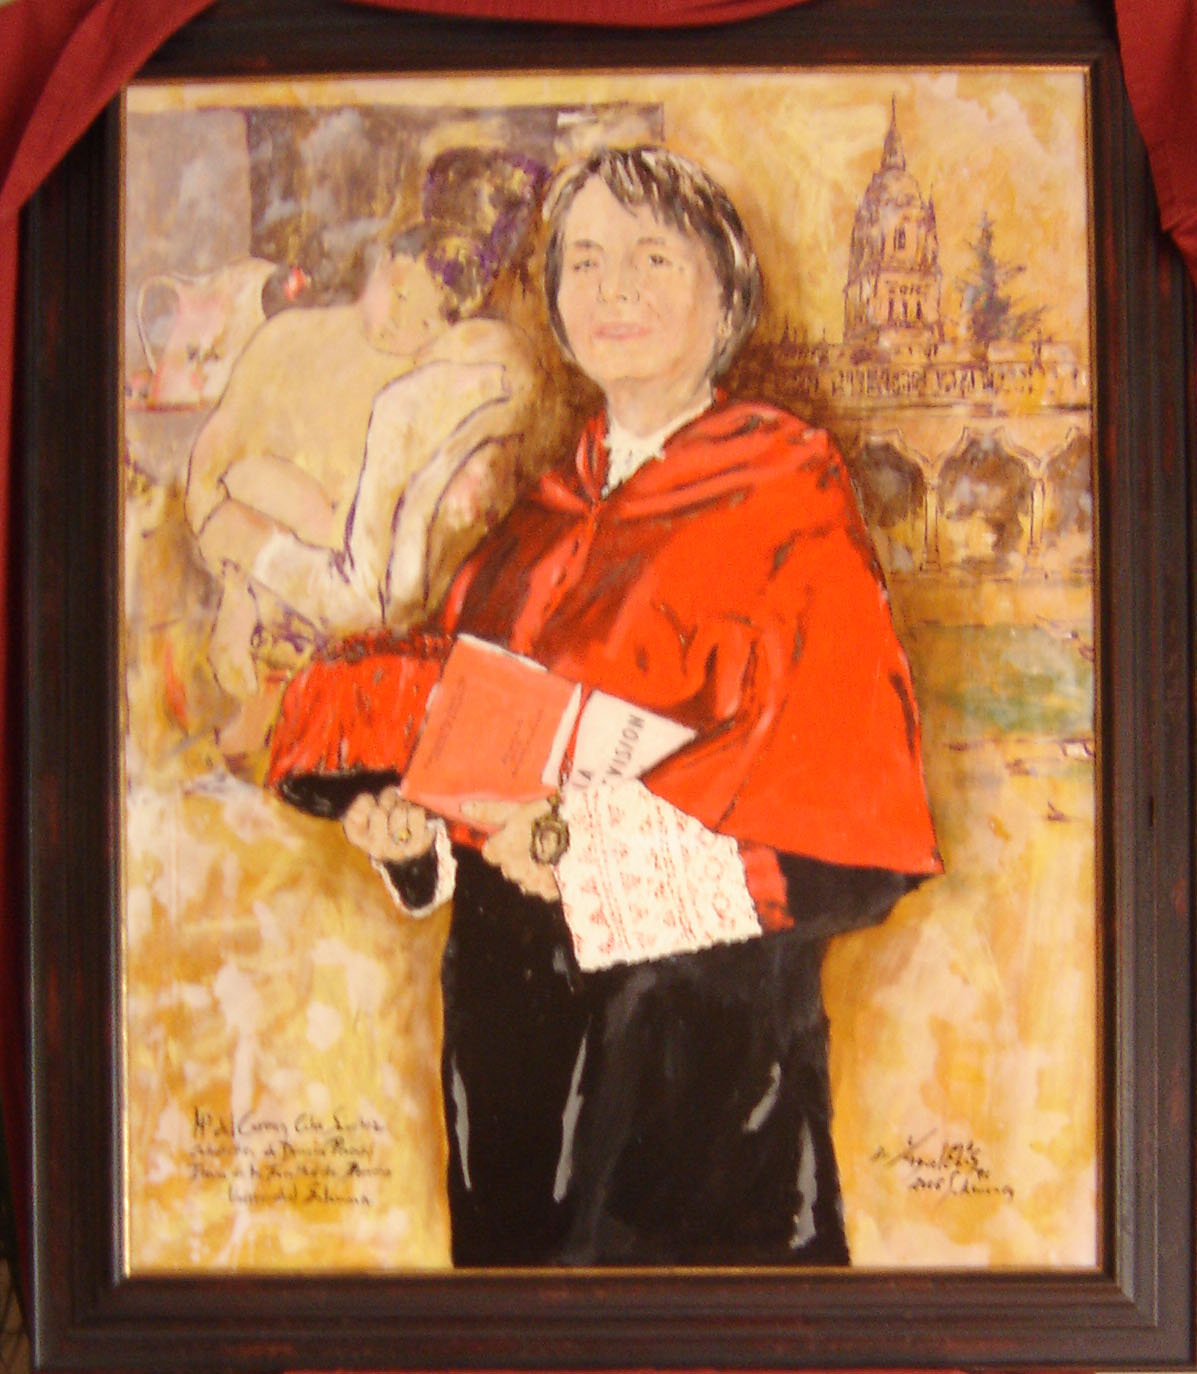 La excatedrática de Derecho Procesal, Mª del Carmen Calvo Sánchez, condecorada con la Cruz de Honor de la Orden de San Raimundo de Peñafort